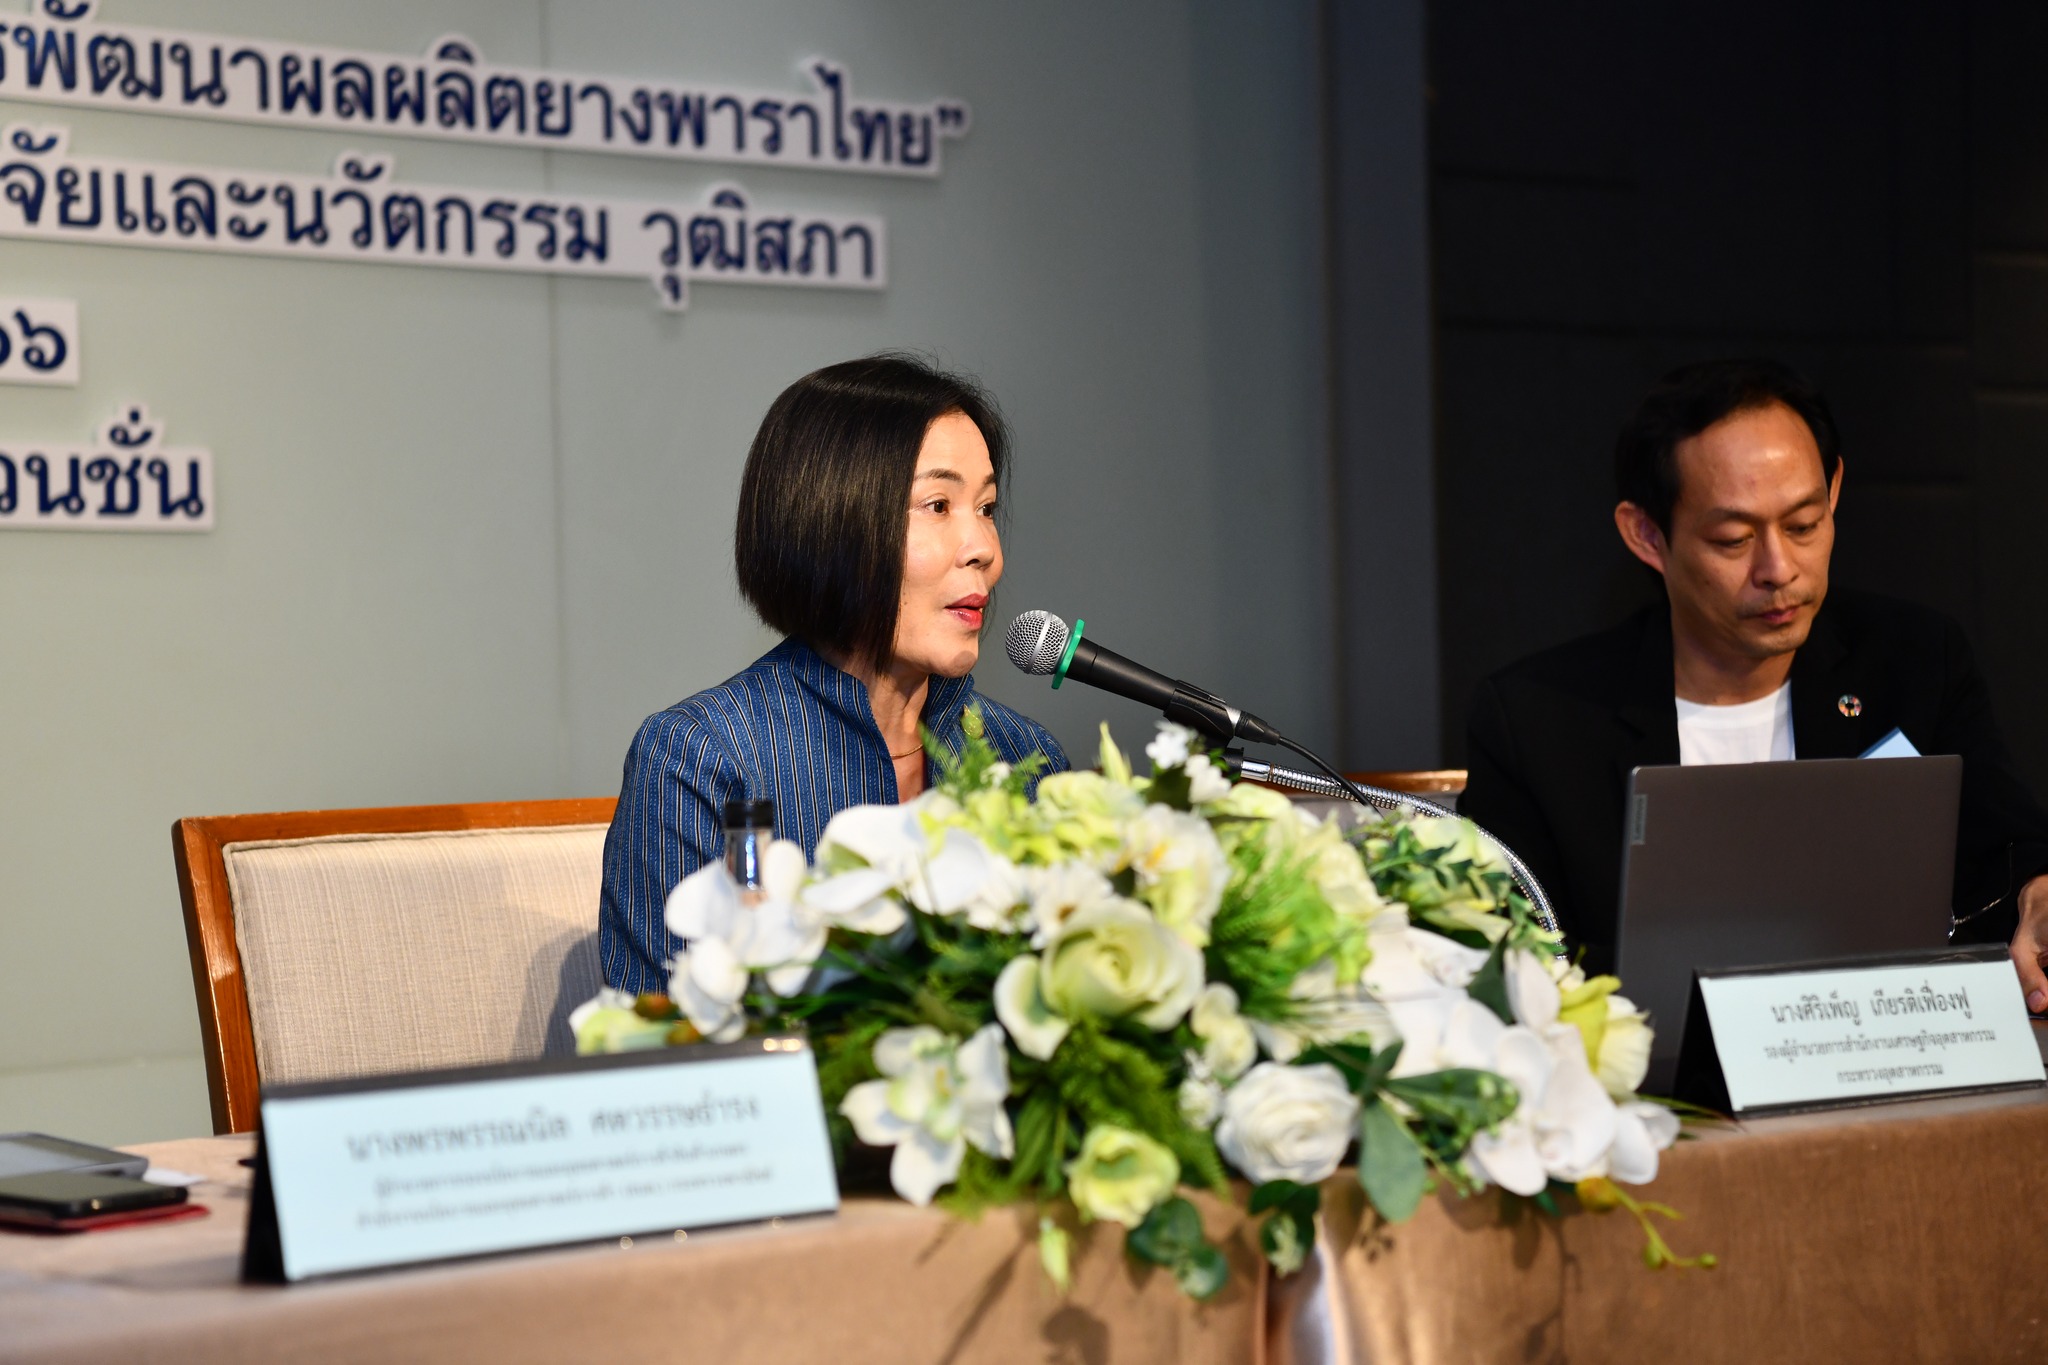 รศอ. ได้รับเกียรติเป็นวิทยากรในงานสัมมนา การนำผลงานวิจัยและนวัตกรรมมาใช้ประโยชน์ในการพัฒนาผลผลิตยางพาราไทย